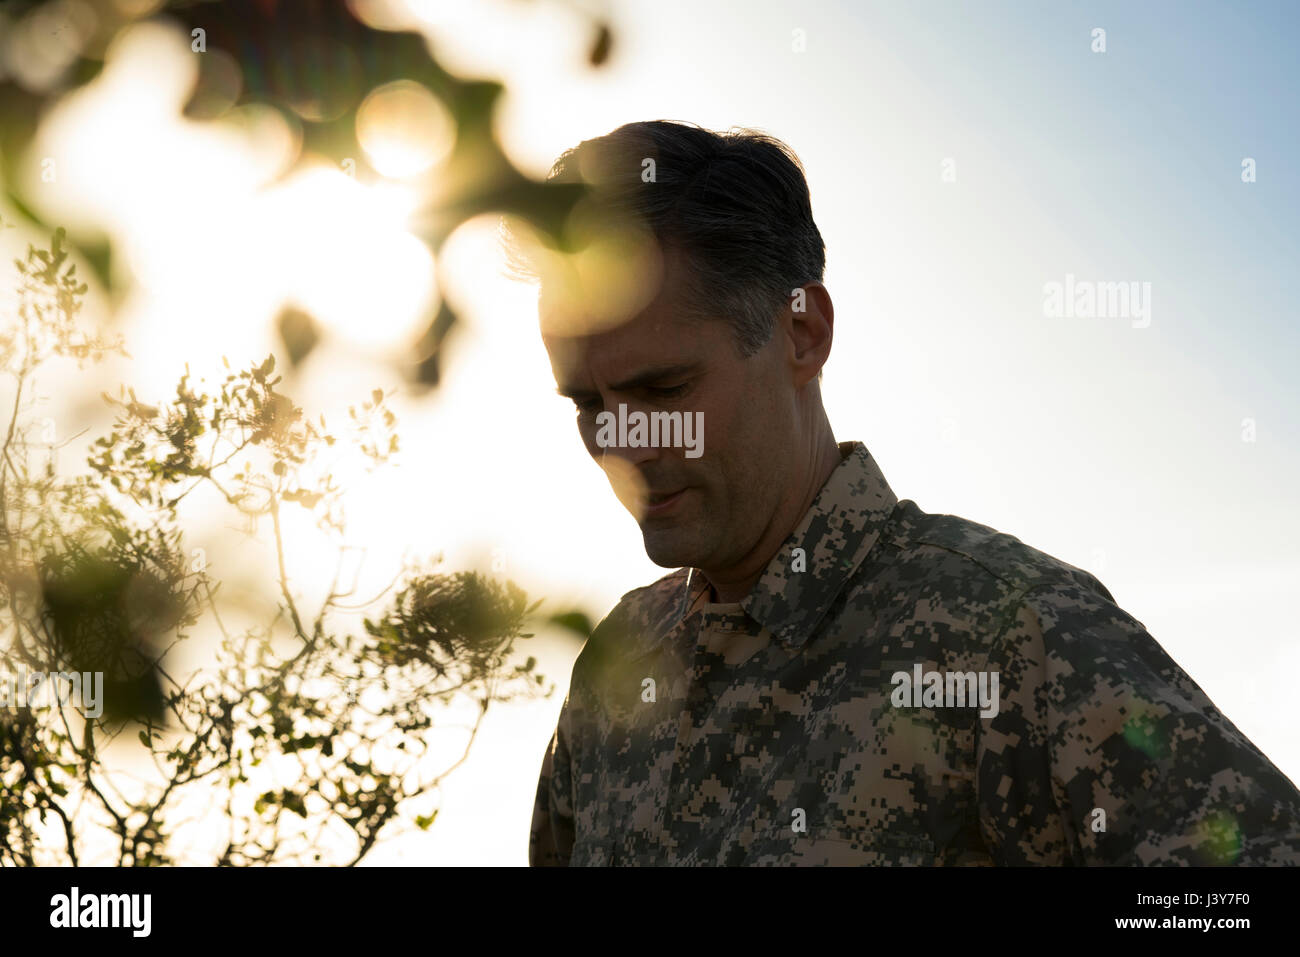 Portrait de soldat portant des vêtements de combat à la recherche vers le bas, Runyon Canyon, Los Angeles, Californie, USA Banque D'Images